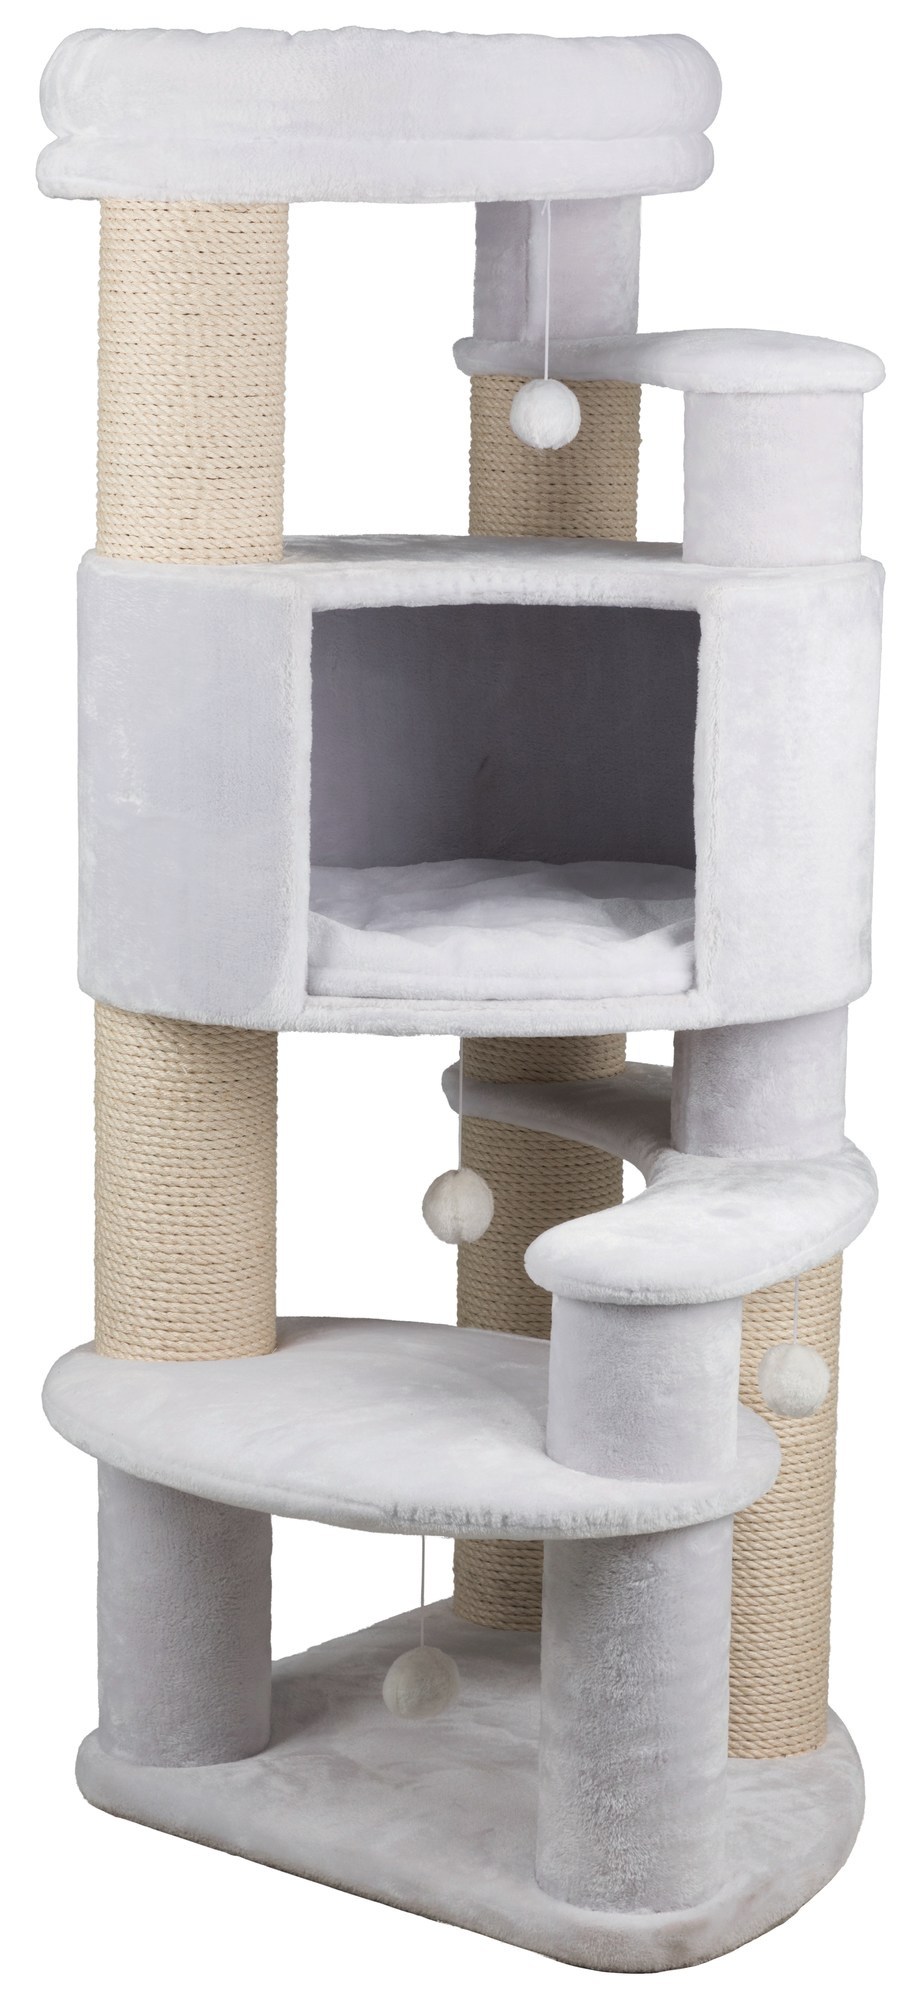 Домик для кошки XXL Zita, 147 см, белый заказать онлайн, опт и розница.  TRIXIE — официальный поставщик в России